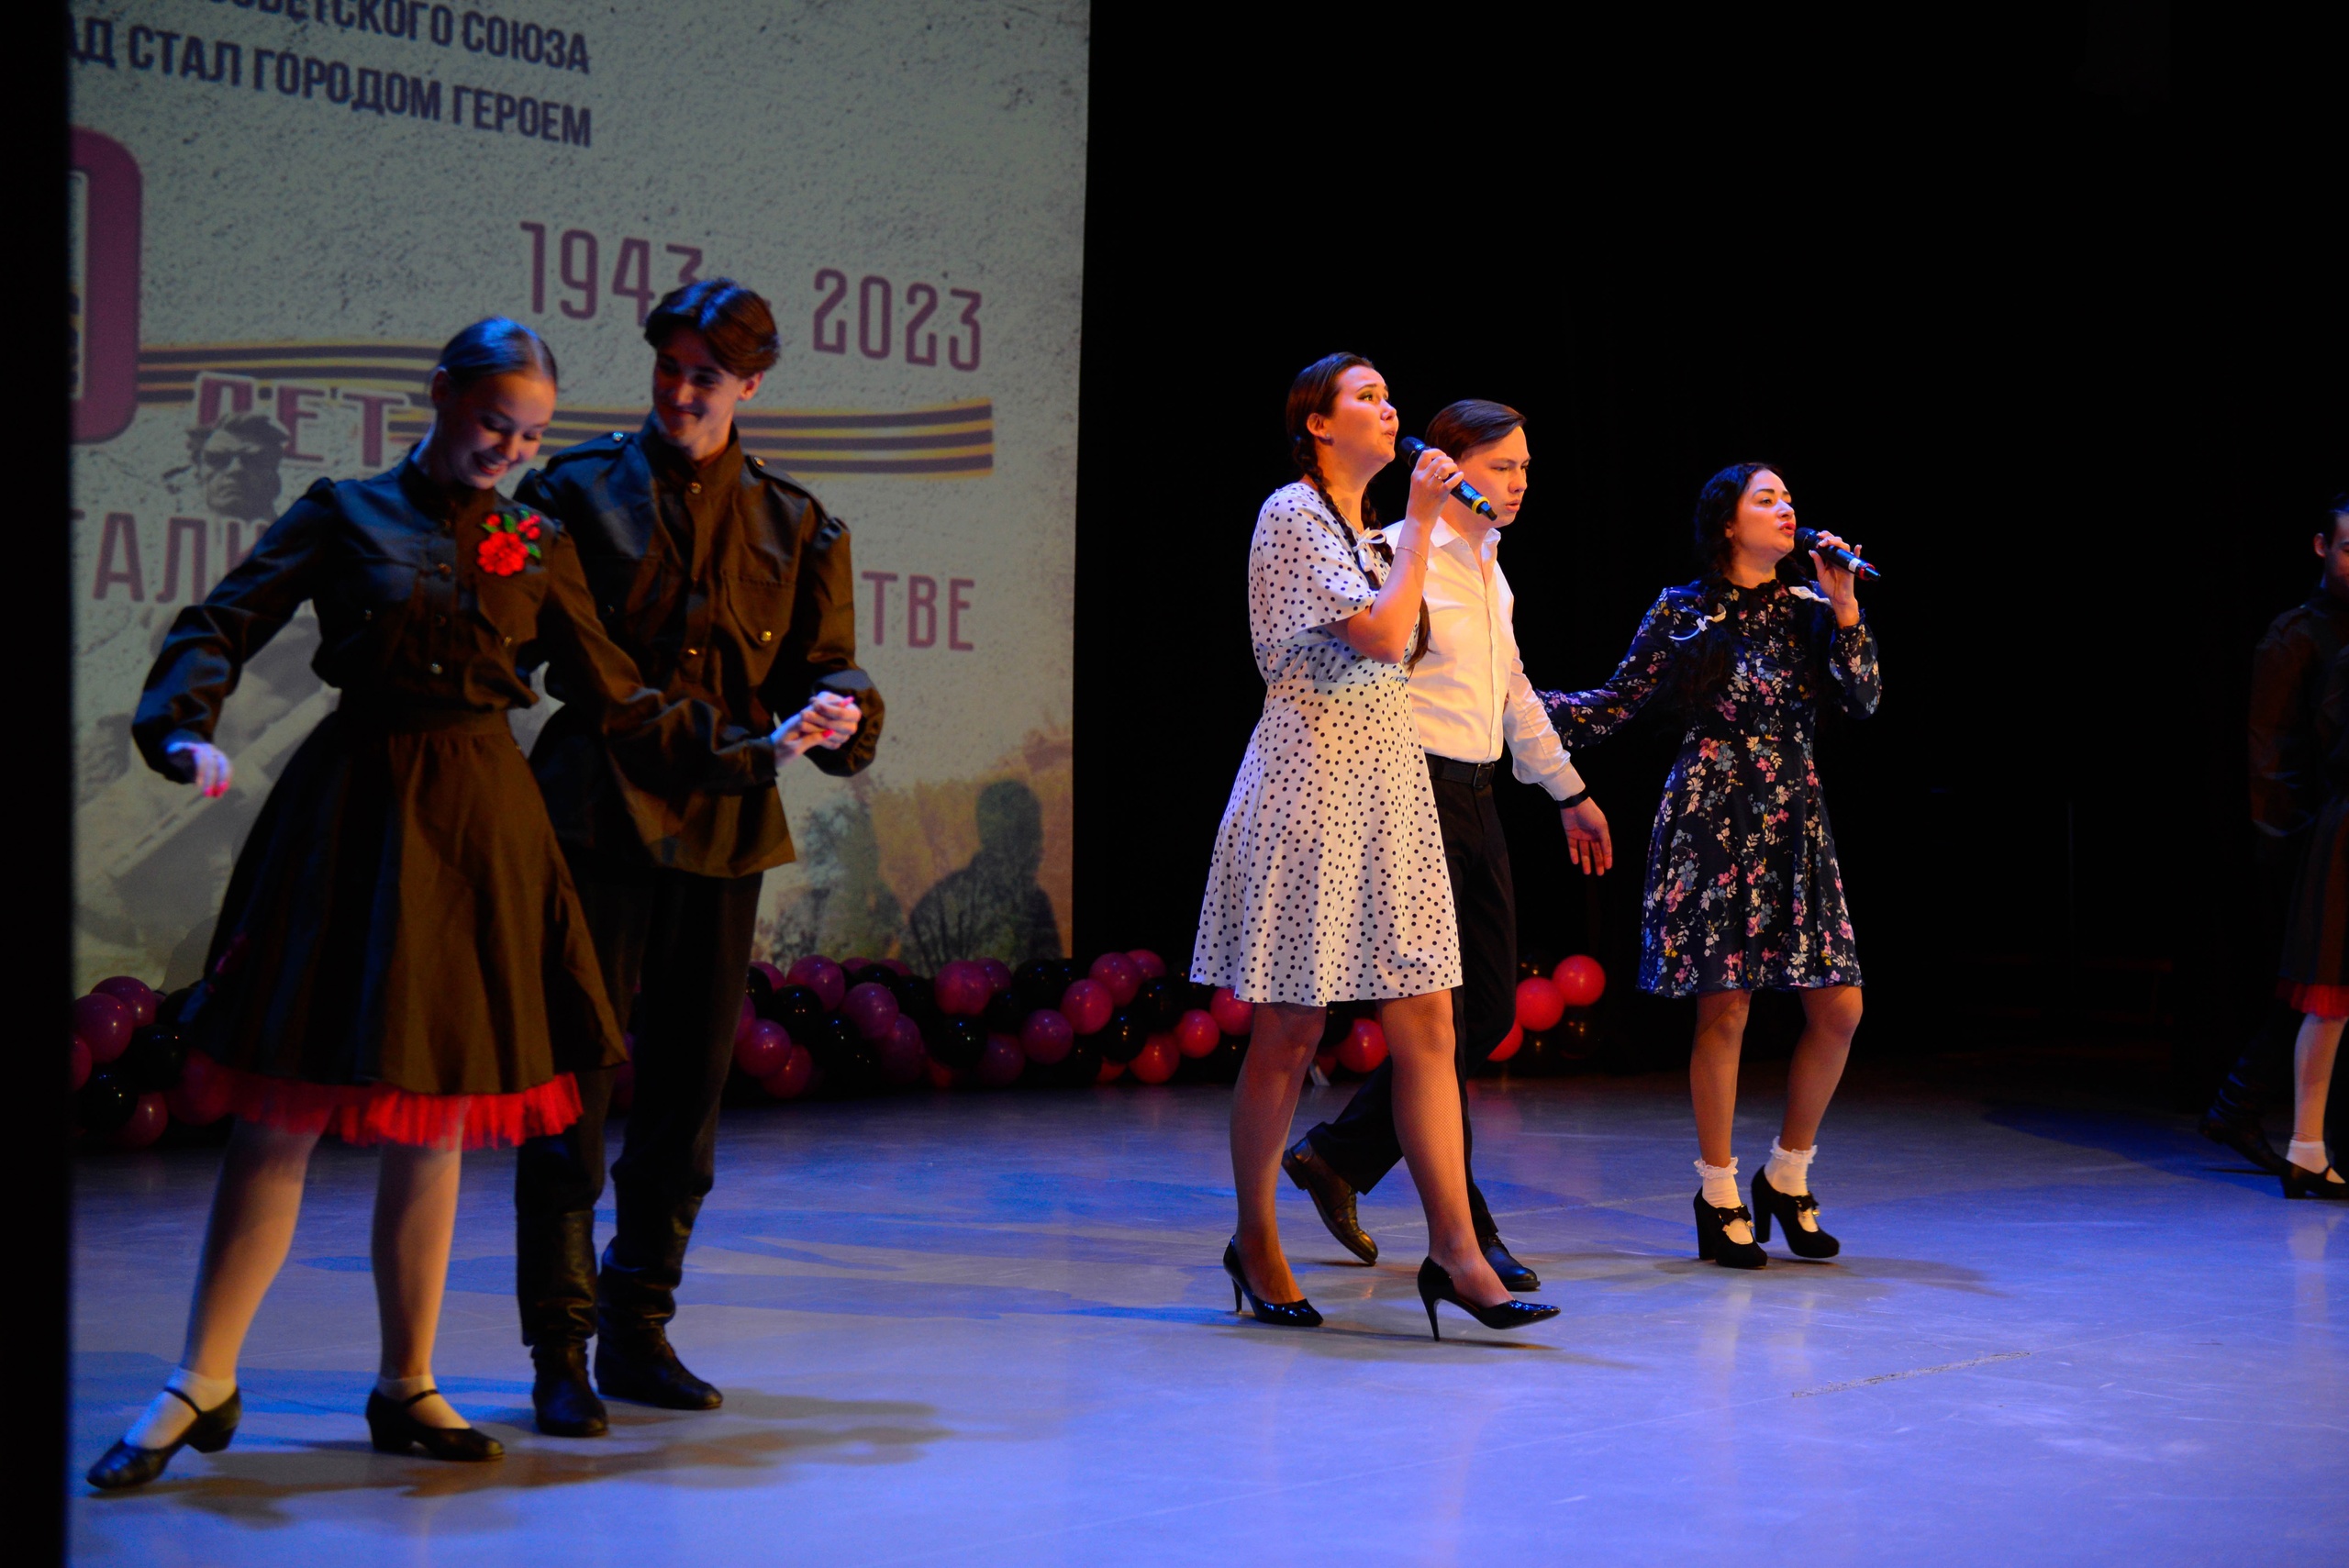 Дорогами войны: концерт в честь Дня разгрома фашистких войск под Сталинградом провели в Московском